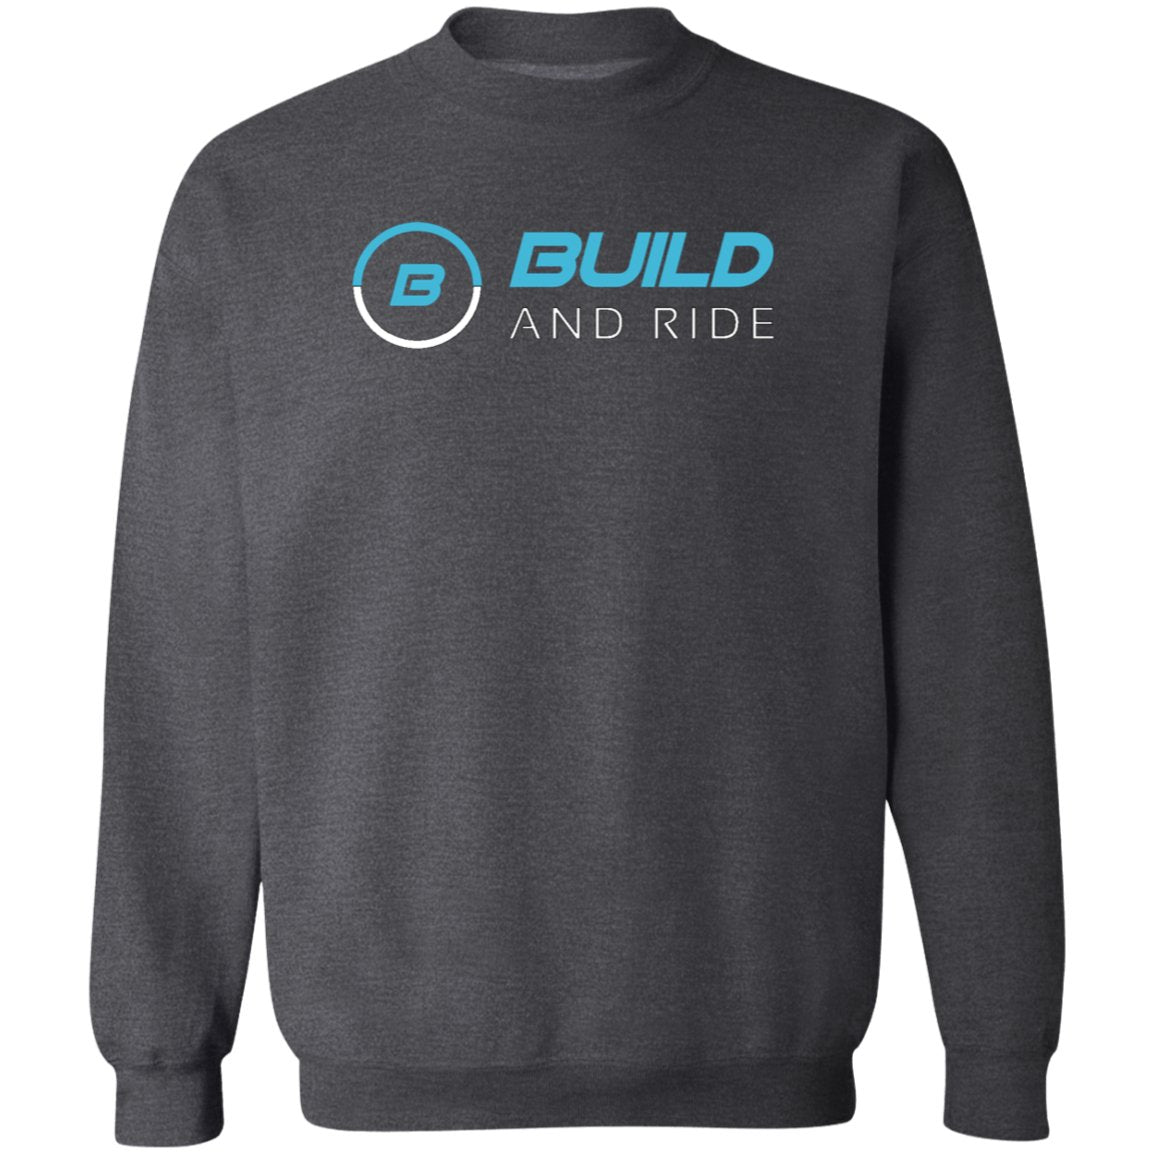 Build And Ride 2 Crewneck Sweatshirt - Build And Ride